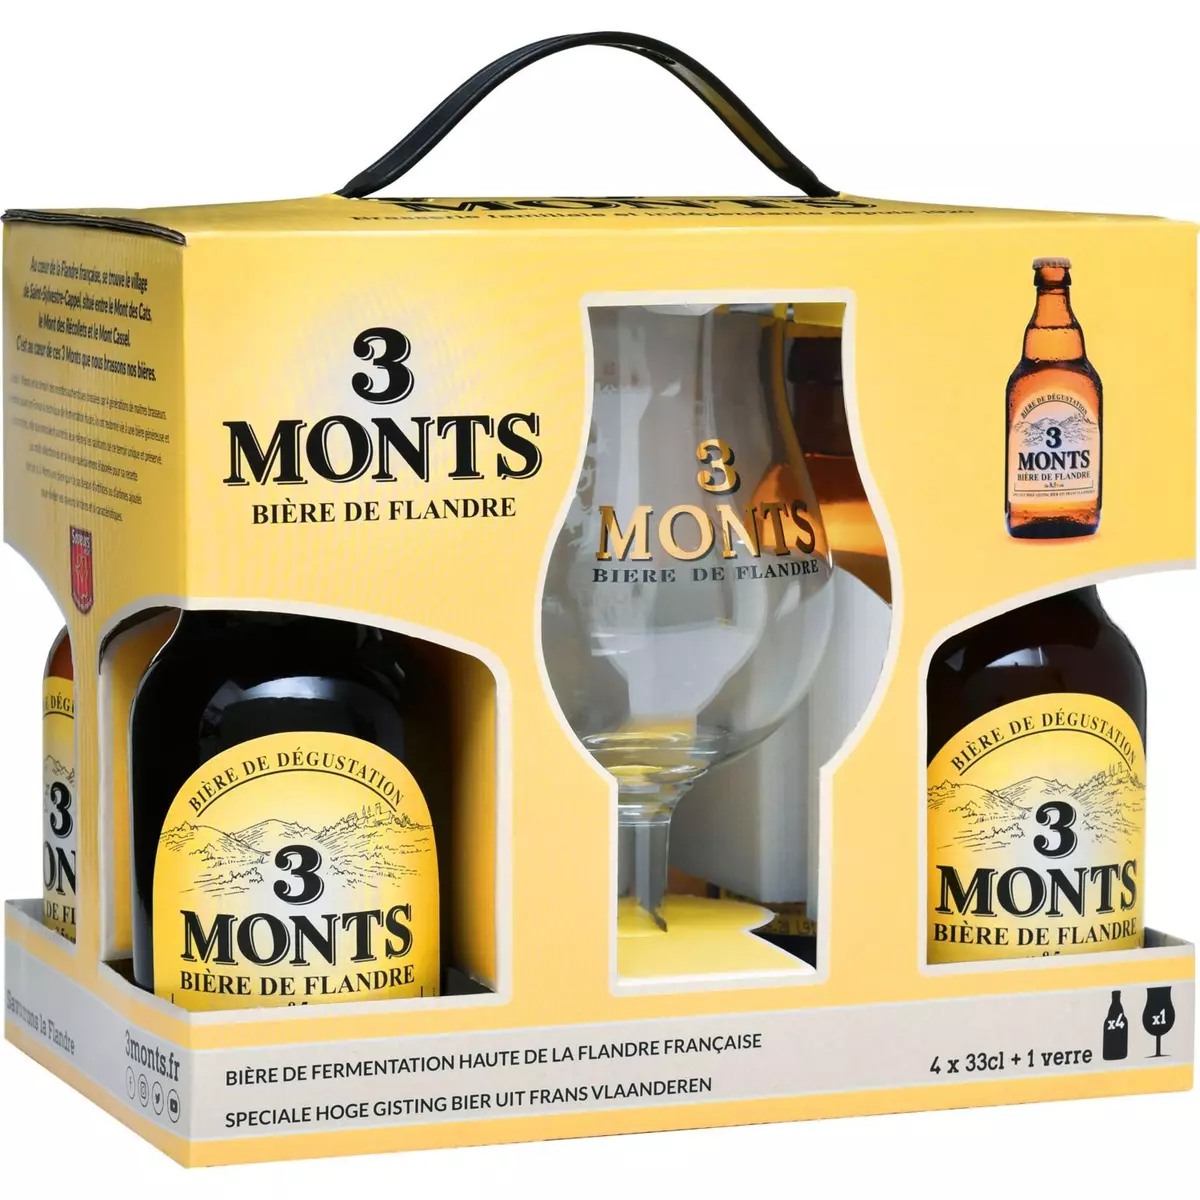 3 MONTS Bière blonde coffret 8,5% bouteilles + 1 verre 4x33cl